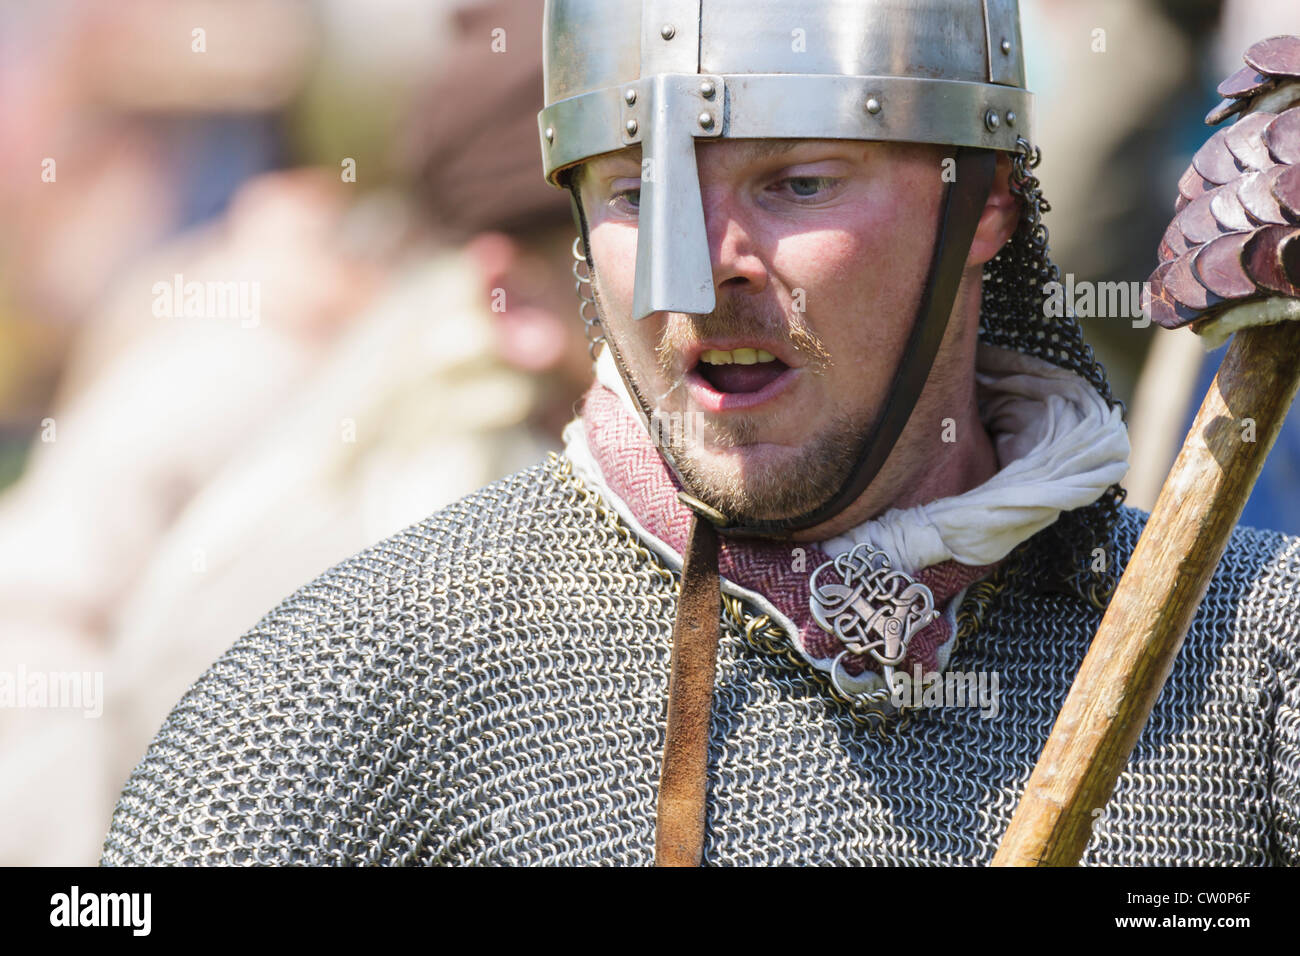 El hombre en la réplica de traje medieval durante el Viking / Recreación anglosajona. St Albans, Reino Unido. Mayo de 2012 Foto de stock